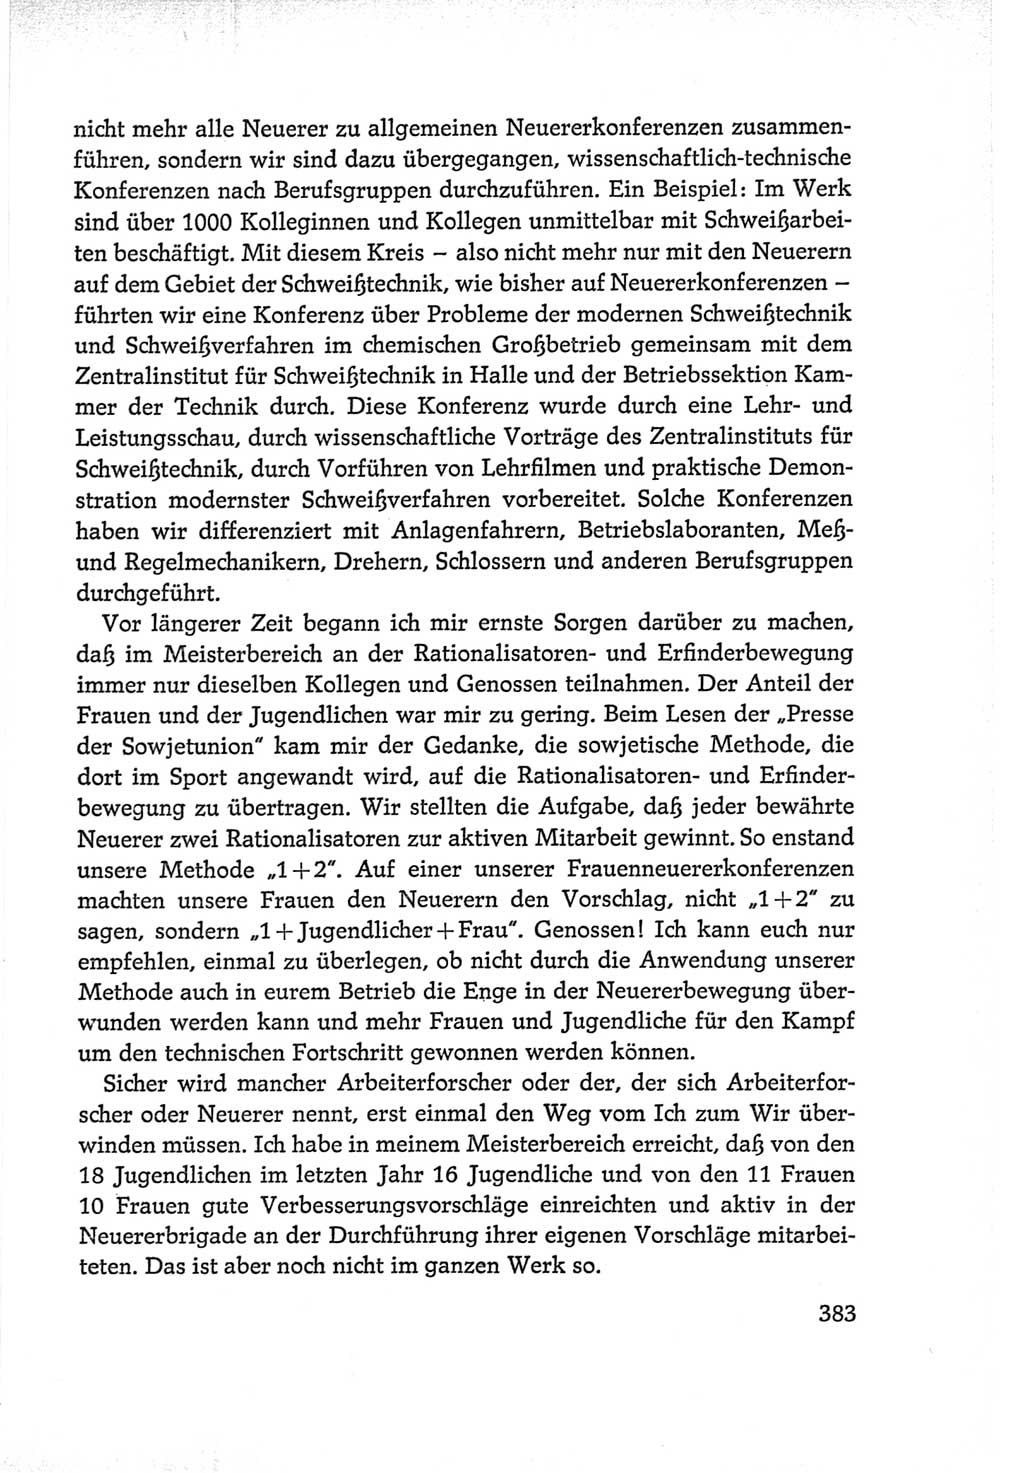 Protokoll der Verhandlungen des Ⅵ. Parteitages der Sozialistischen Einheitspartei Deutschlands (SED) [Deutsche Demokratische Republik (DDR)] 1963, Band Ⅰ, Seite 383 (Prot. Verh. Ⅵ. PT SED DDR 1963, Bd. Ⅰ, S. 383)